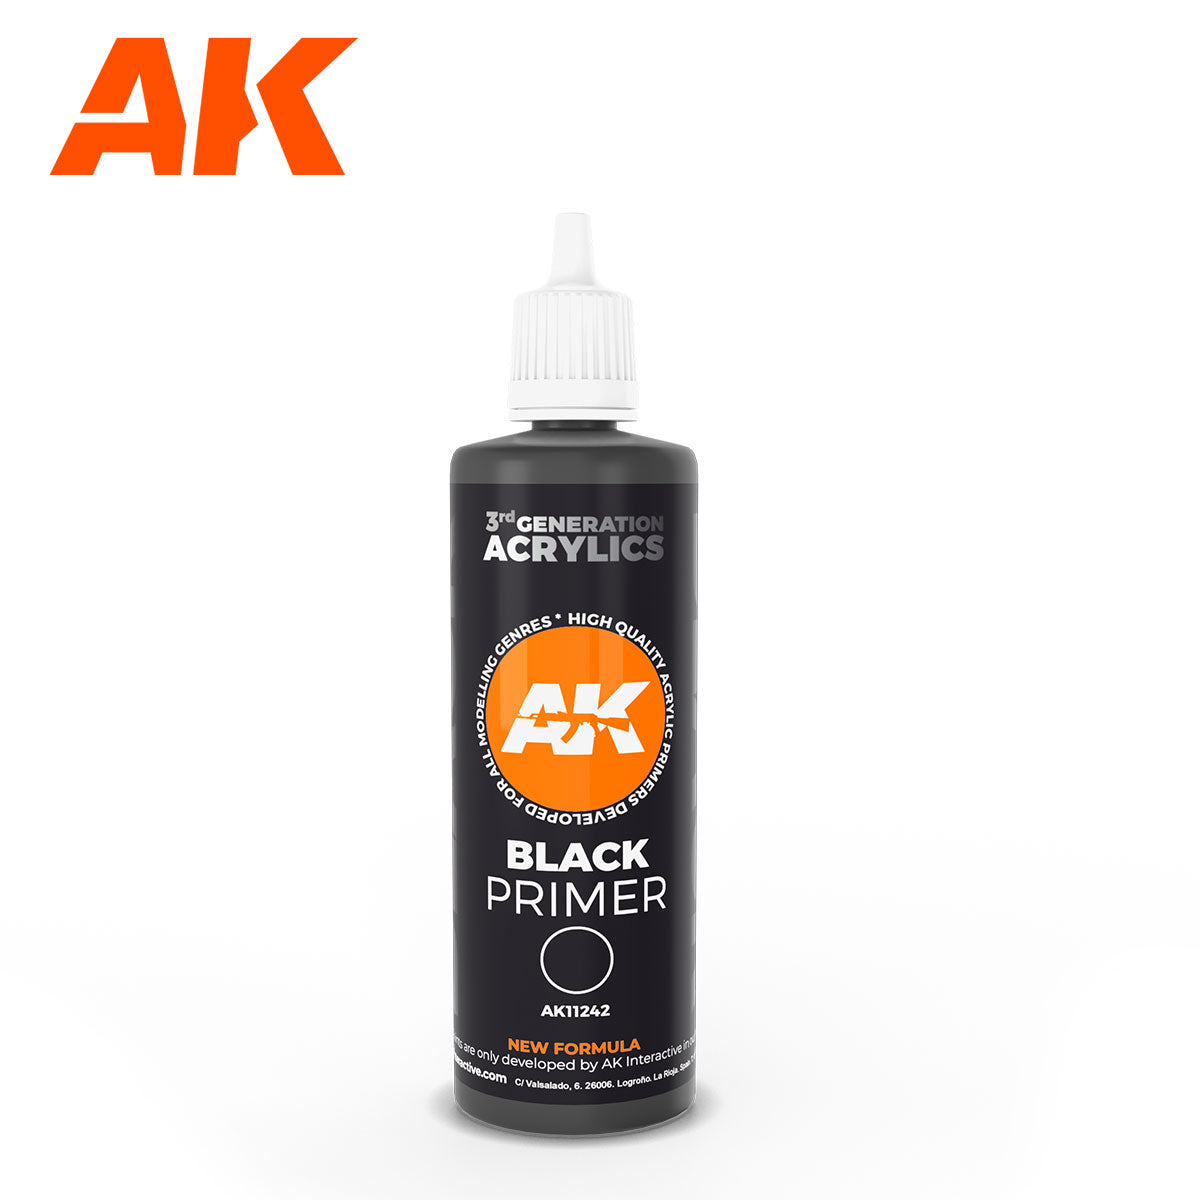 AK Interactive 3Gen Primers - Black Primer 100 ml